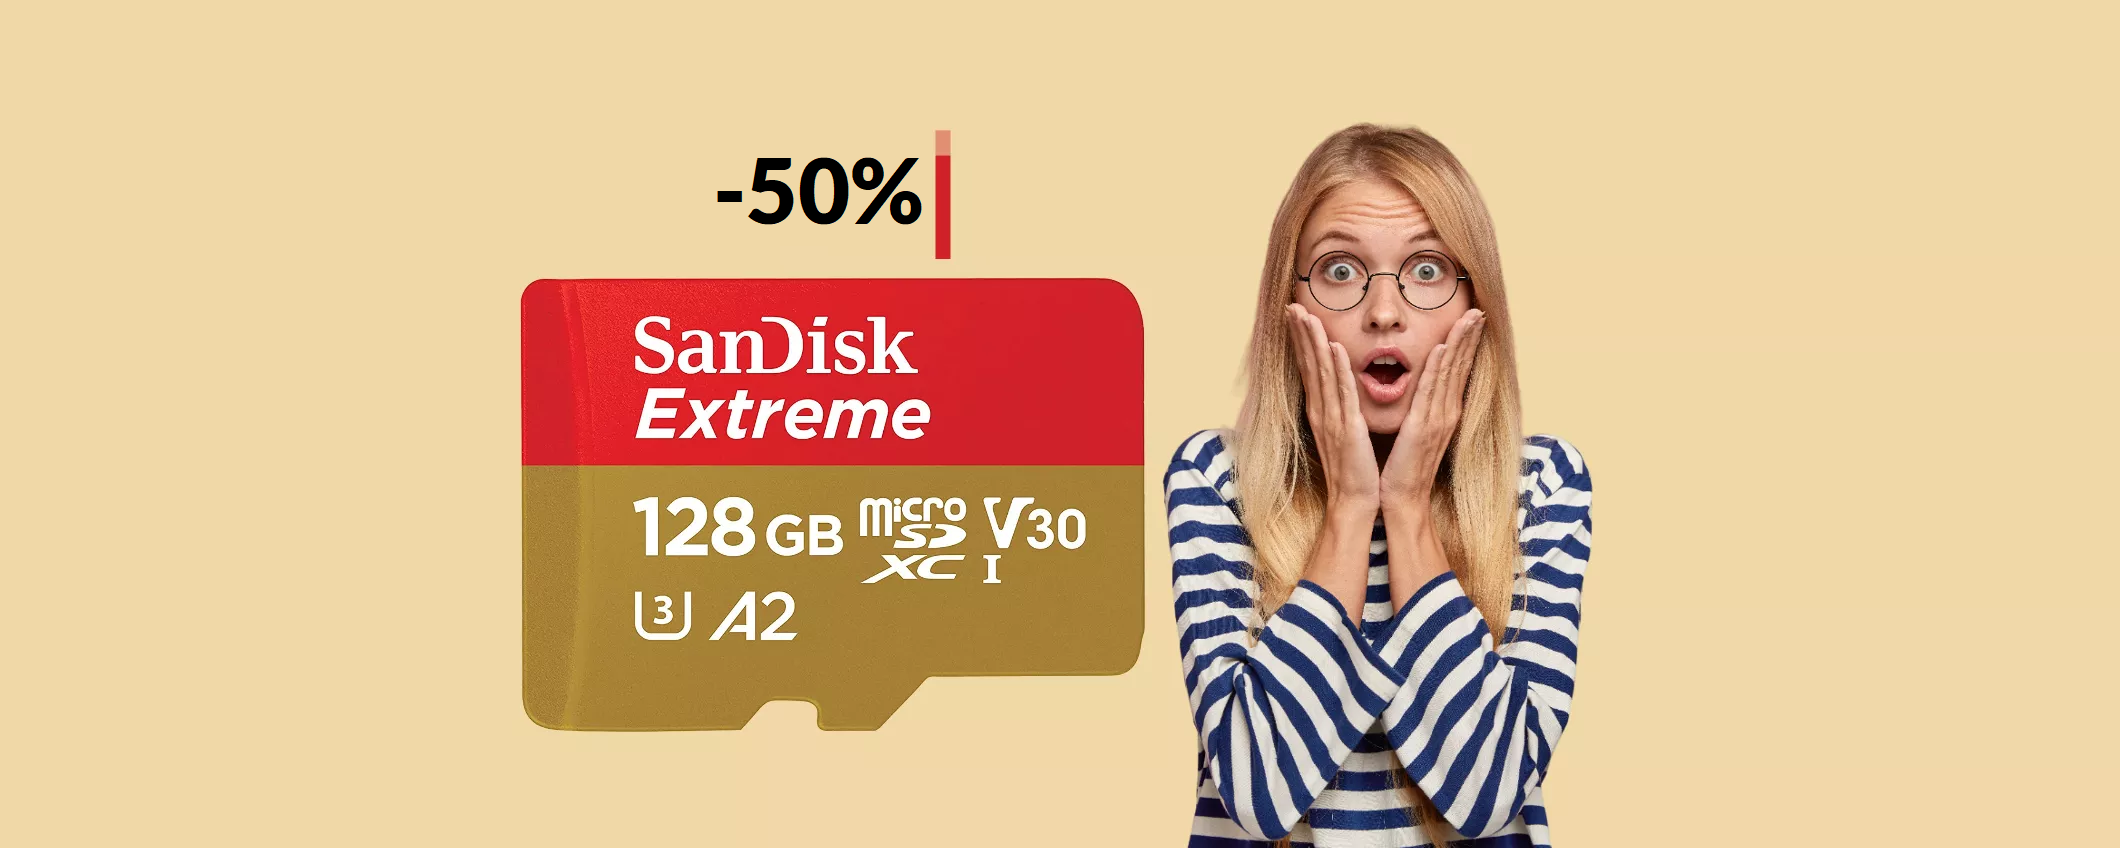 MicroSD 128GB SanDisk a METÀ PREZZO: solo 23€ per averla